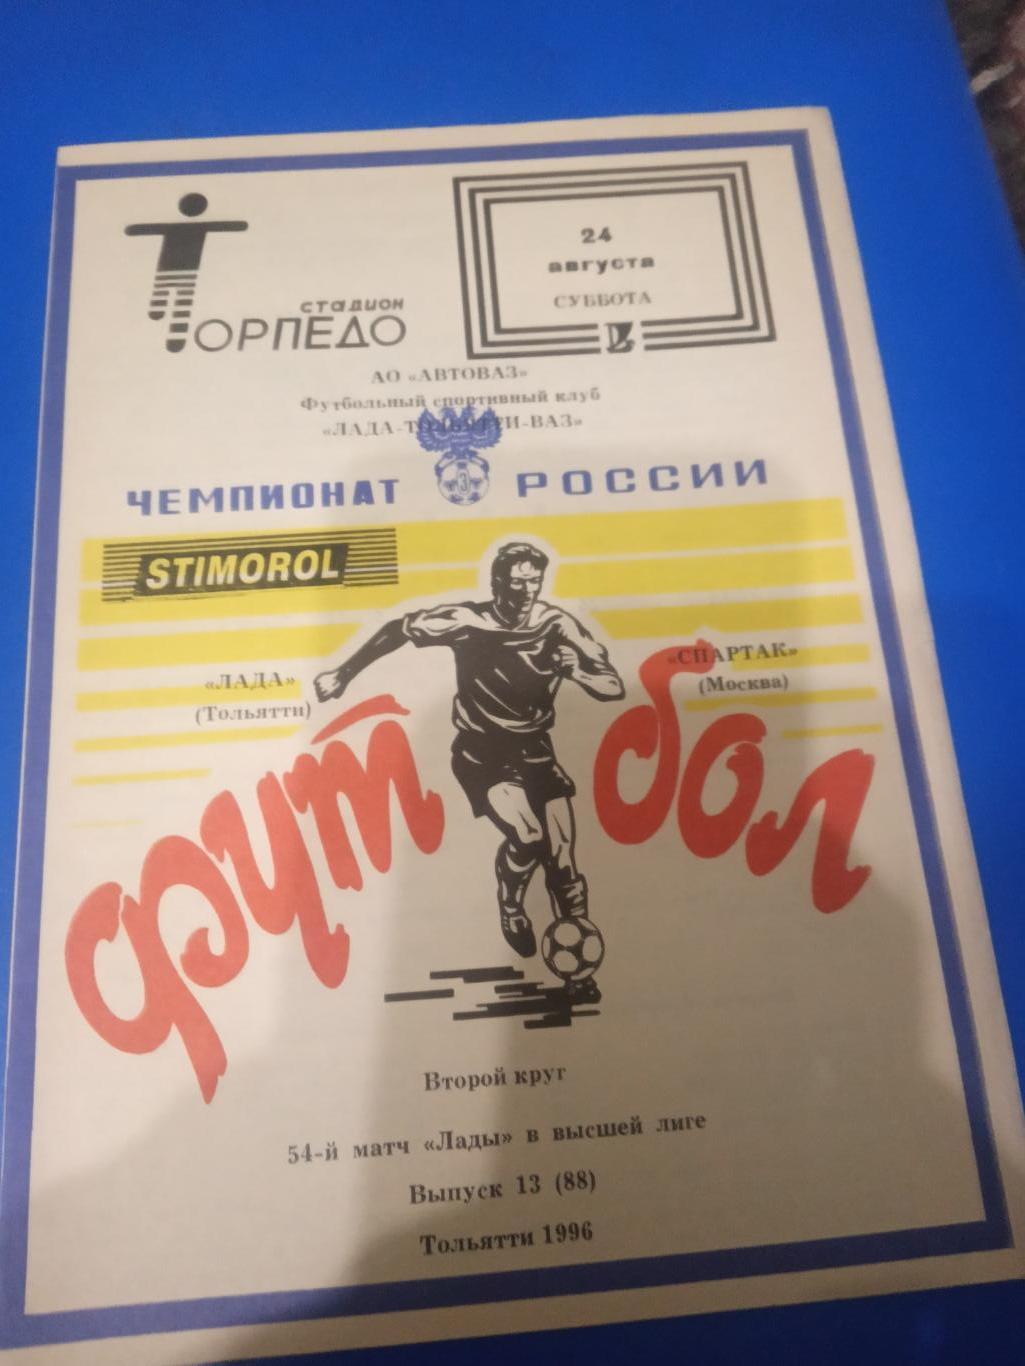 Лада Тольятти - Спартак Москва 24 августа 1994